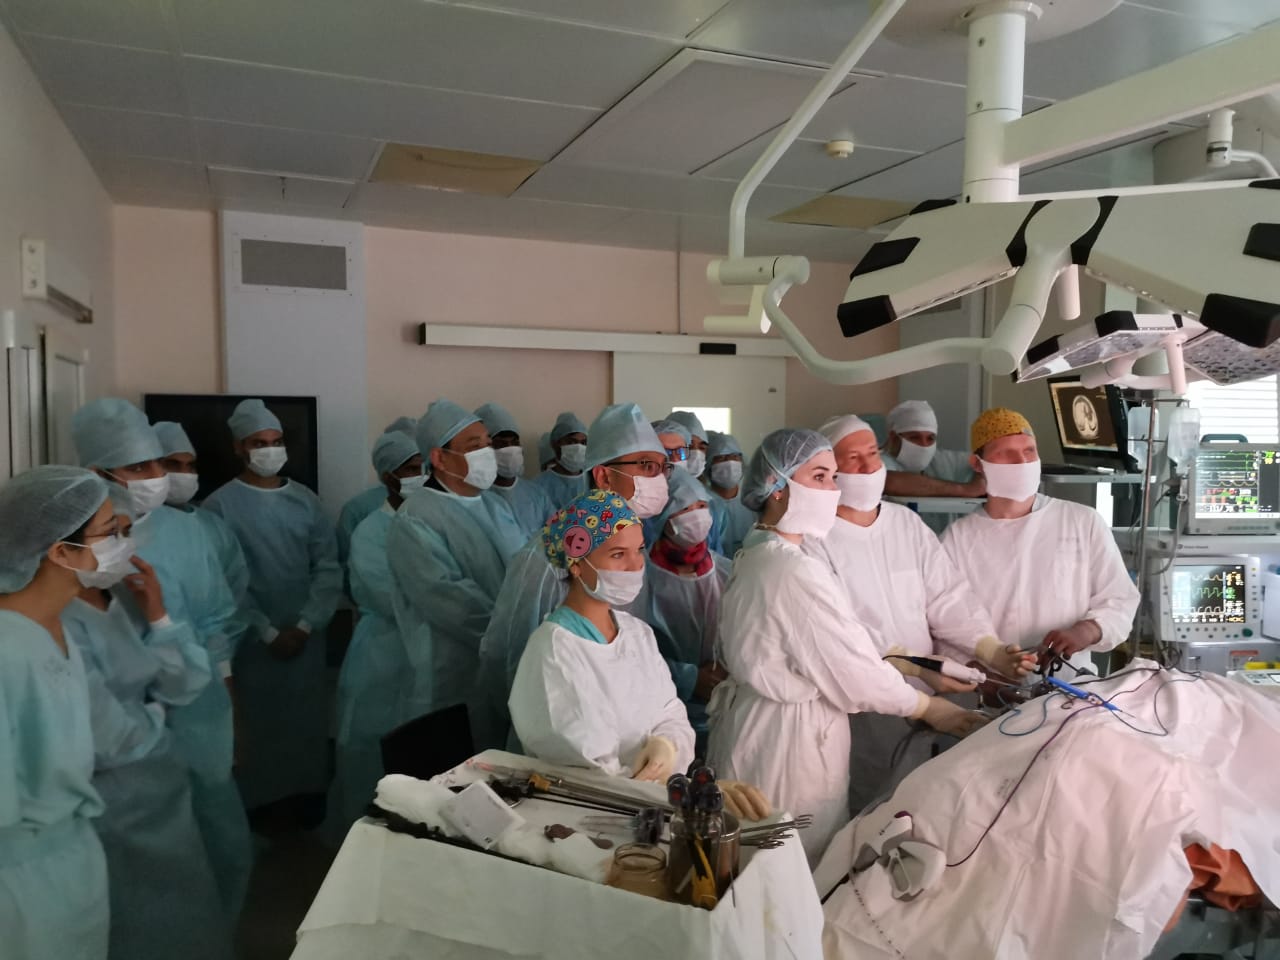 16 октября 2019 года профессор Павлов В.Н. выполнил лапароскопическую радикальную нефрадреналэктомию справа, резекцию правого надпочечника